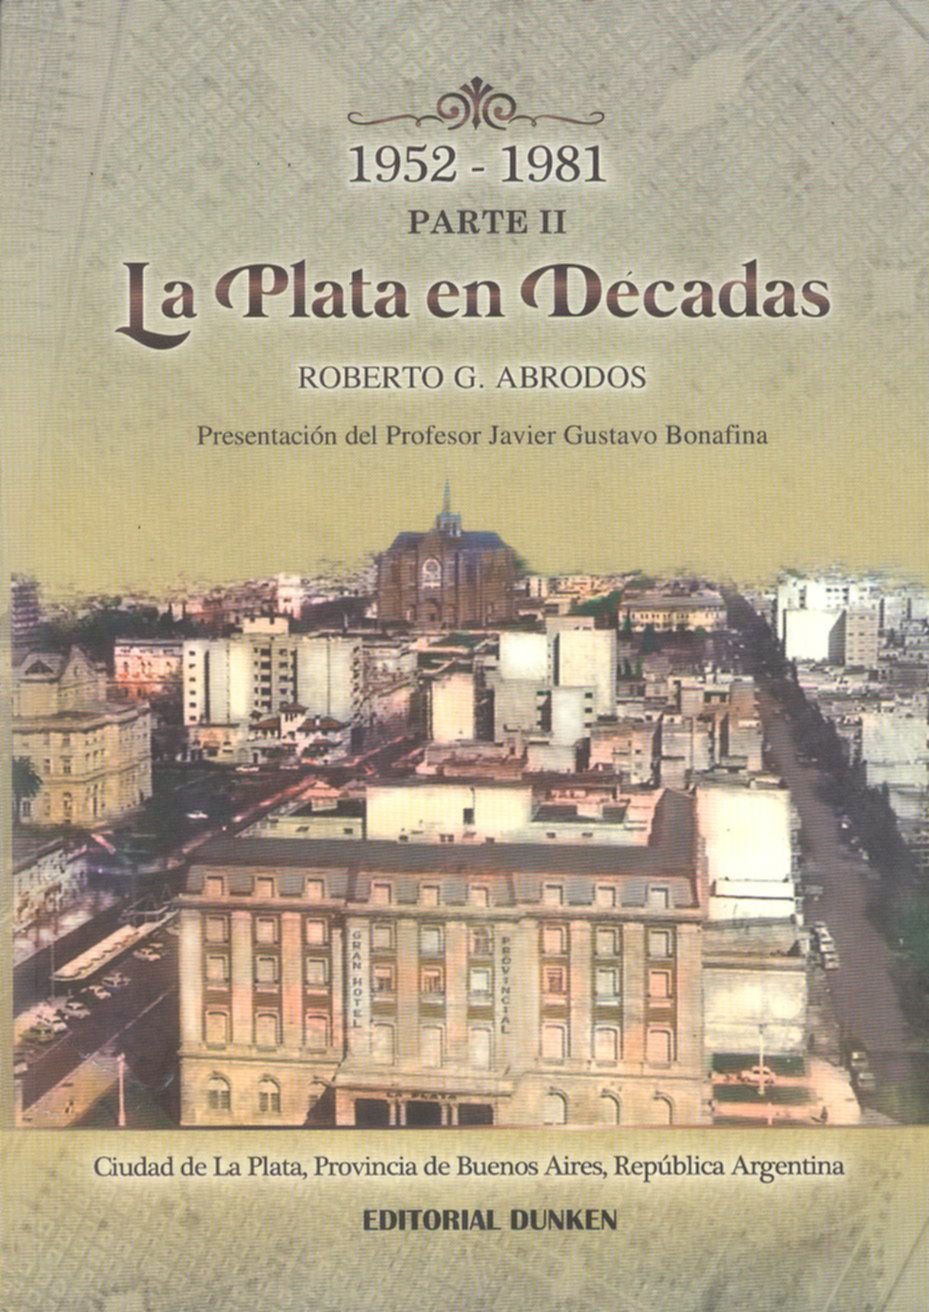 La Plata en décadas
(parte II, 1952-1981)